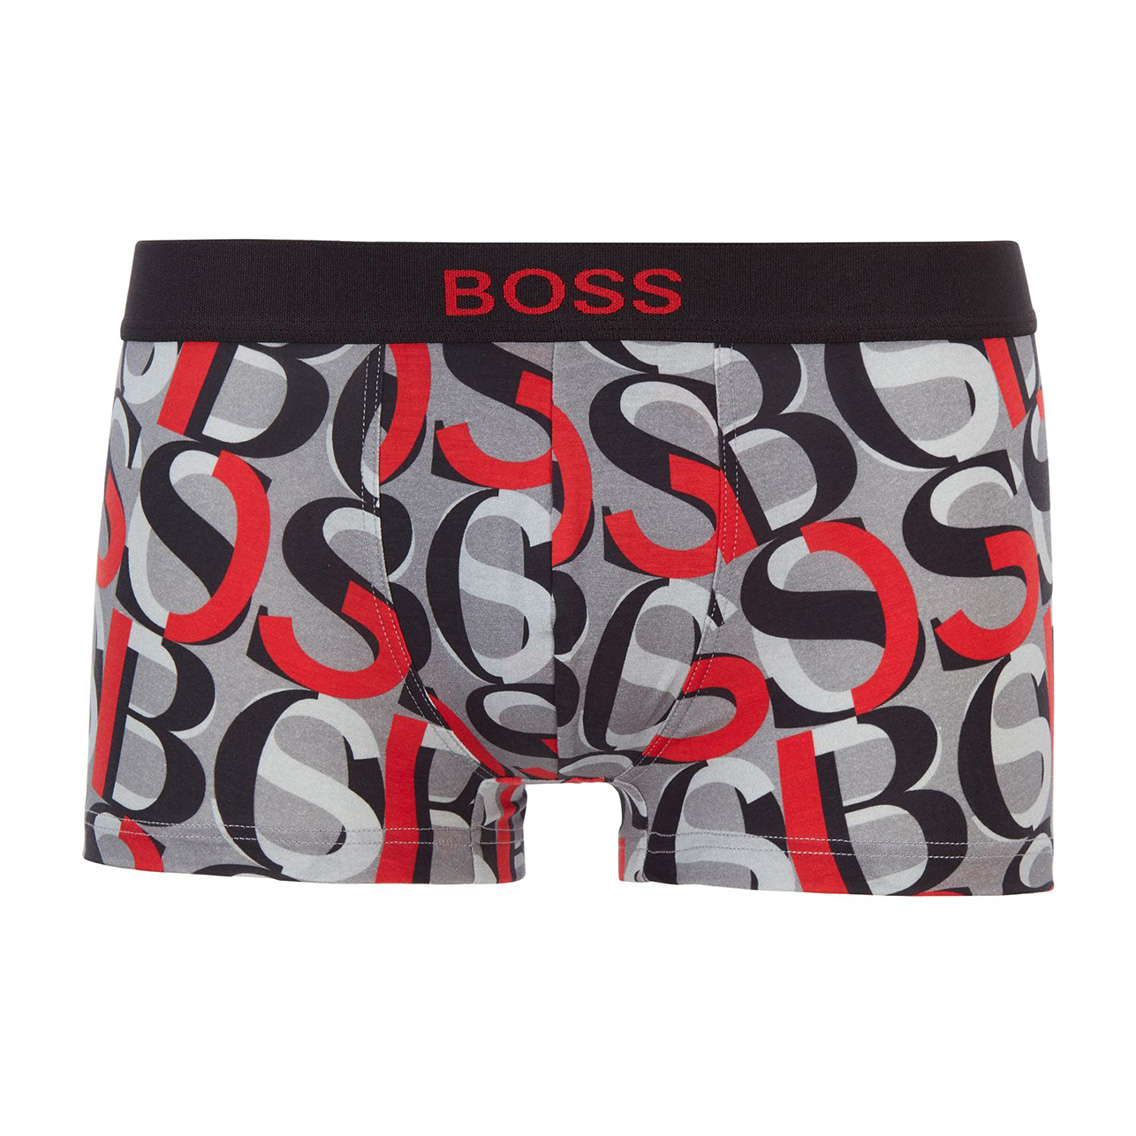 [50449467-612] HUGO BOSS ヒューゴボス ボクサーパンツ メンズ アンダーウェア インナー 男性 下着 ブランド おすすめ 人気 プレゼント